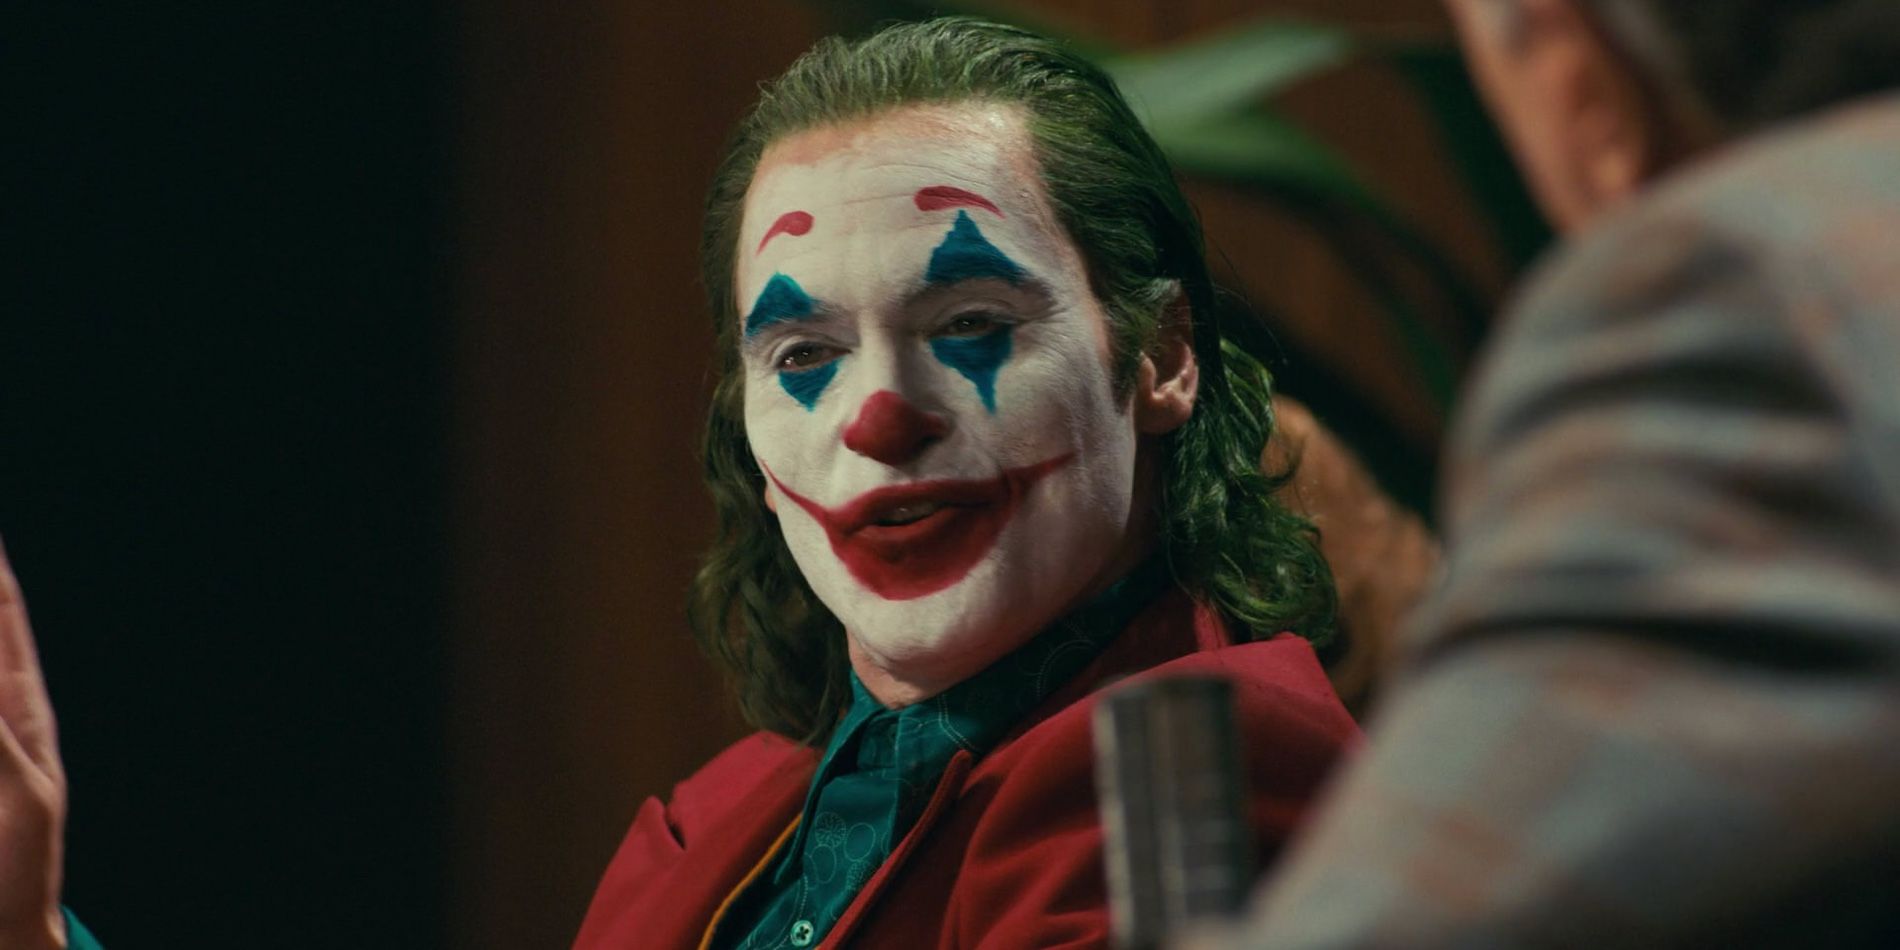 Joker speaking at the Murray Franklin show in Joker (2019)